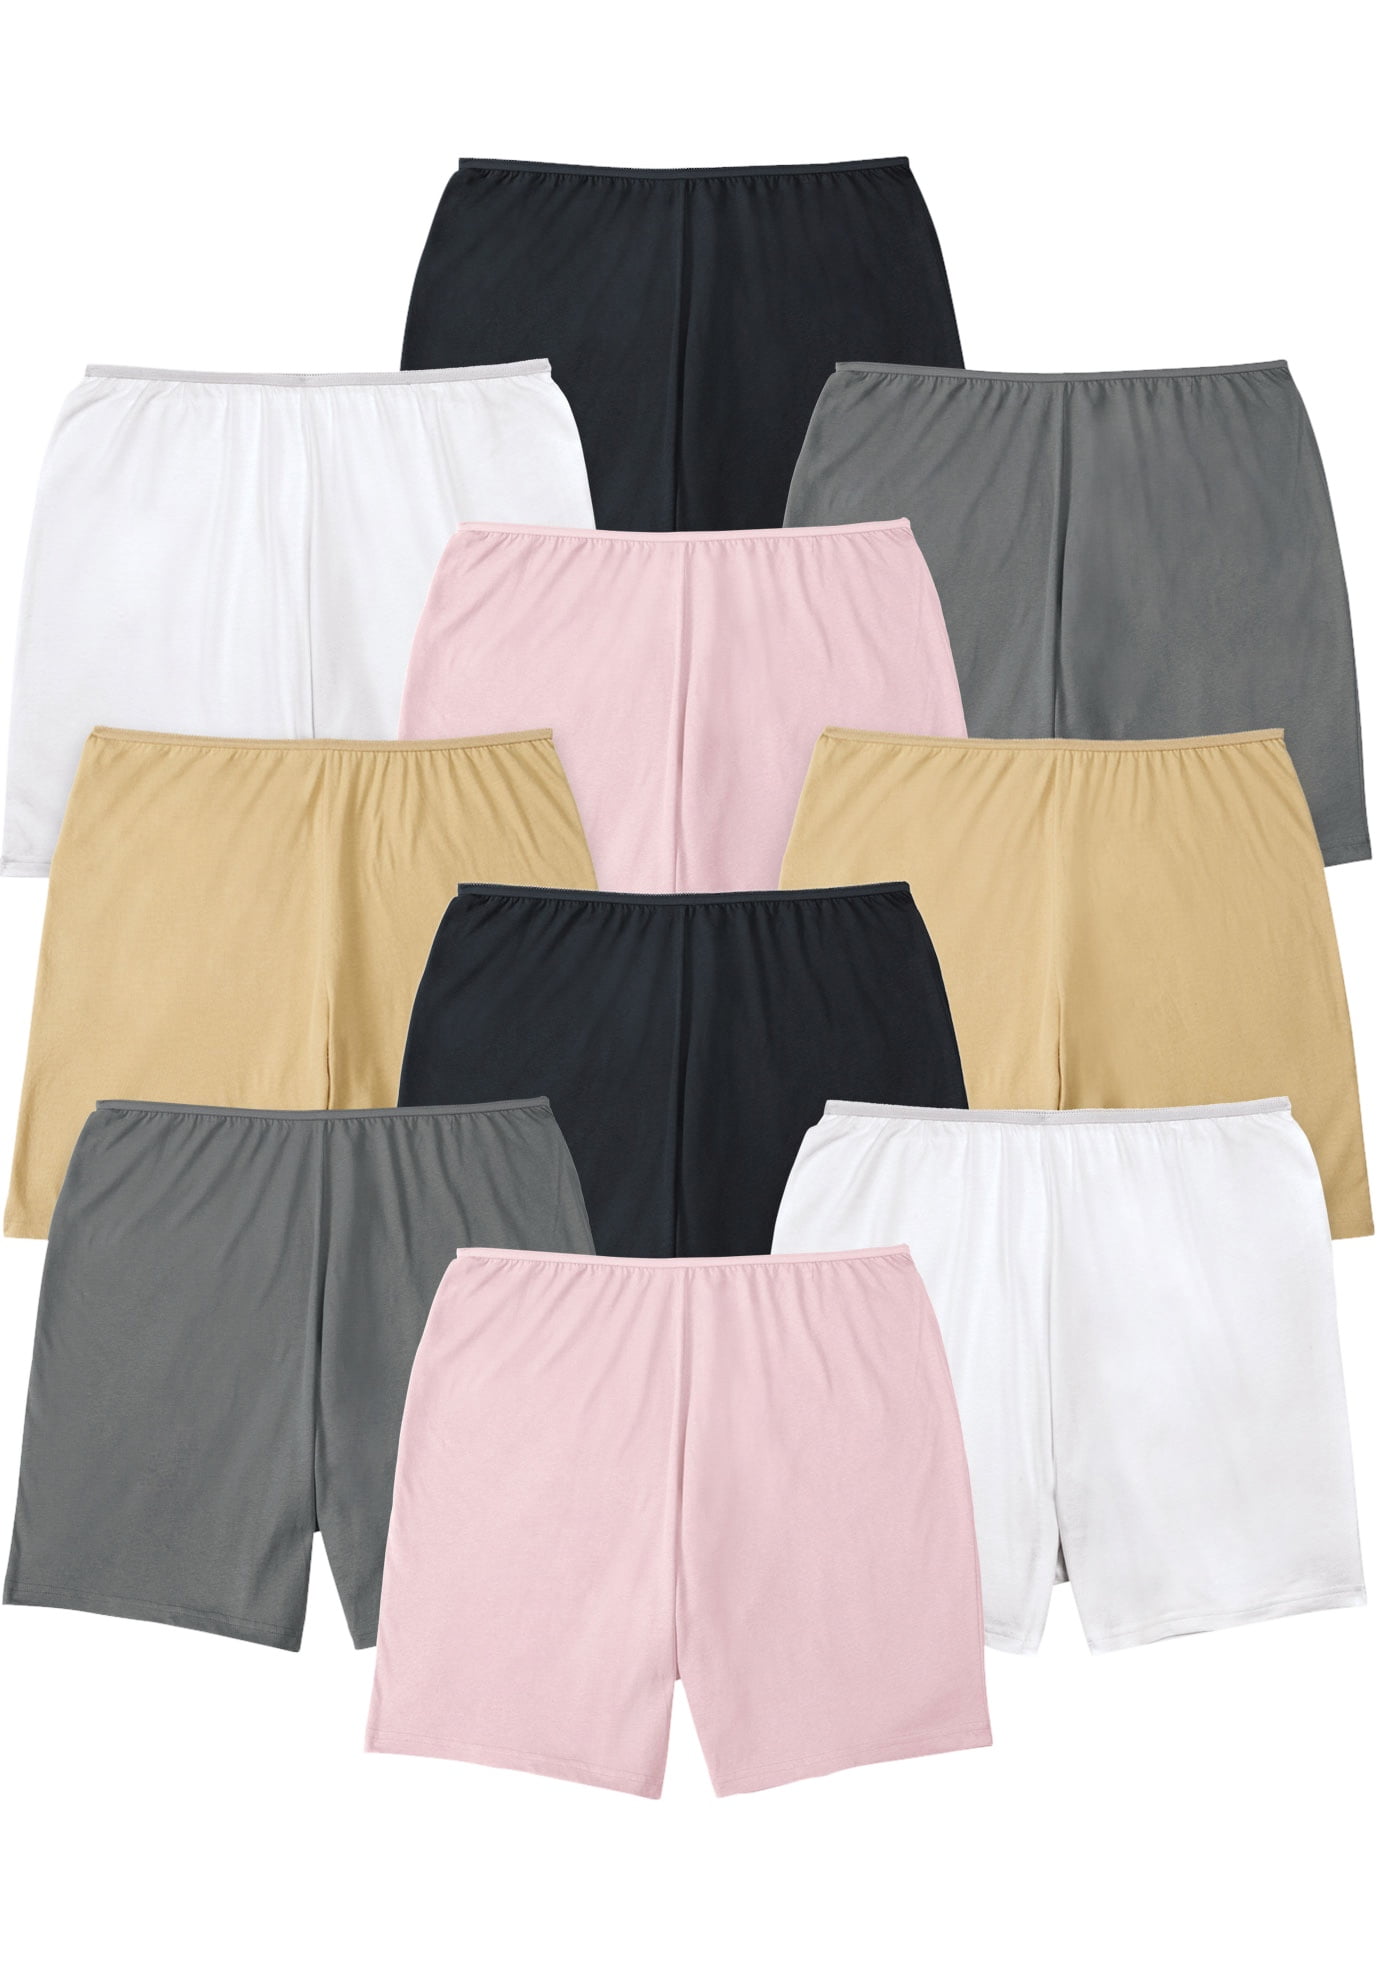 Comfort Choice Women's Plus Size Cotton Boxer 10-Pack Underwear ...